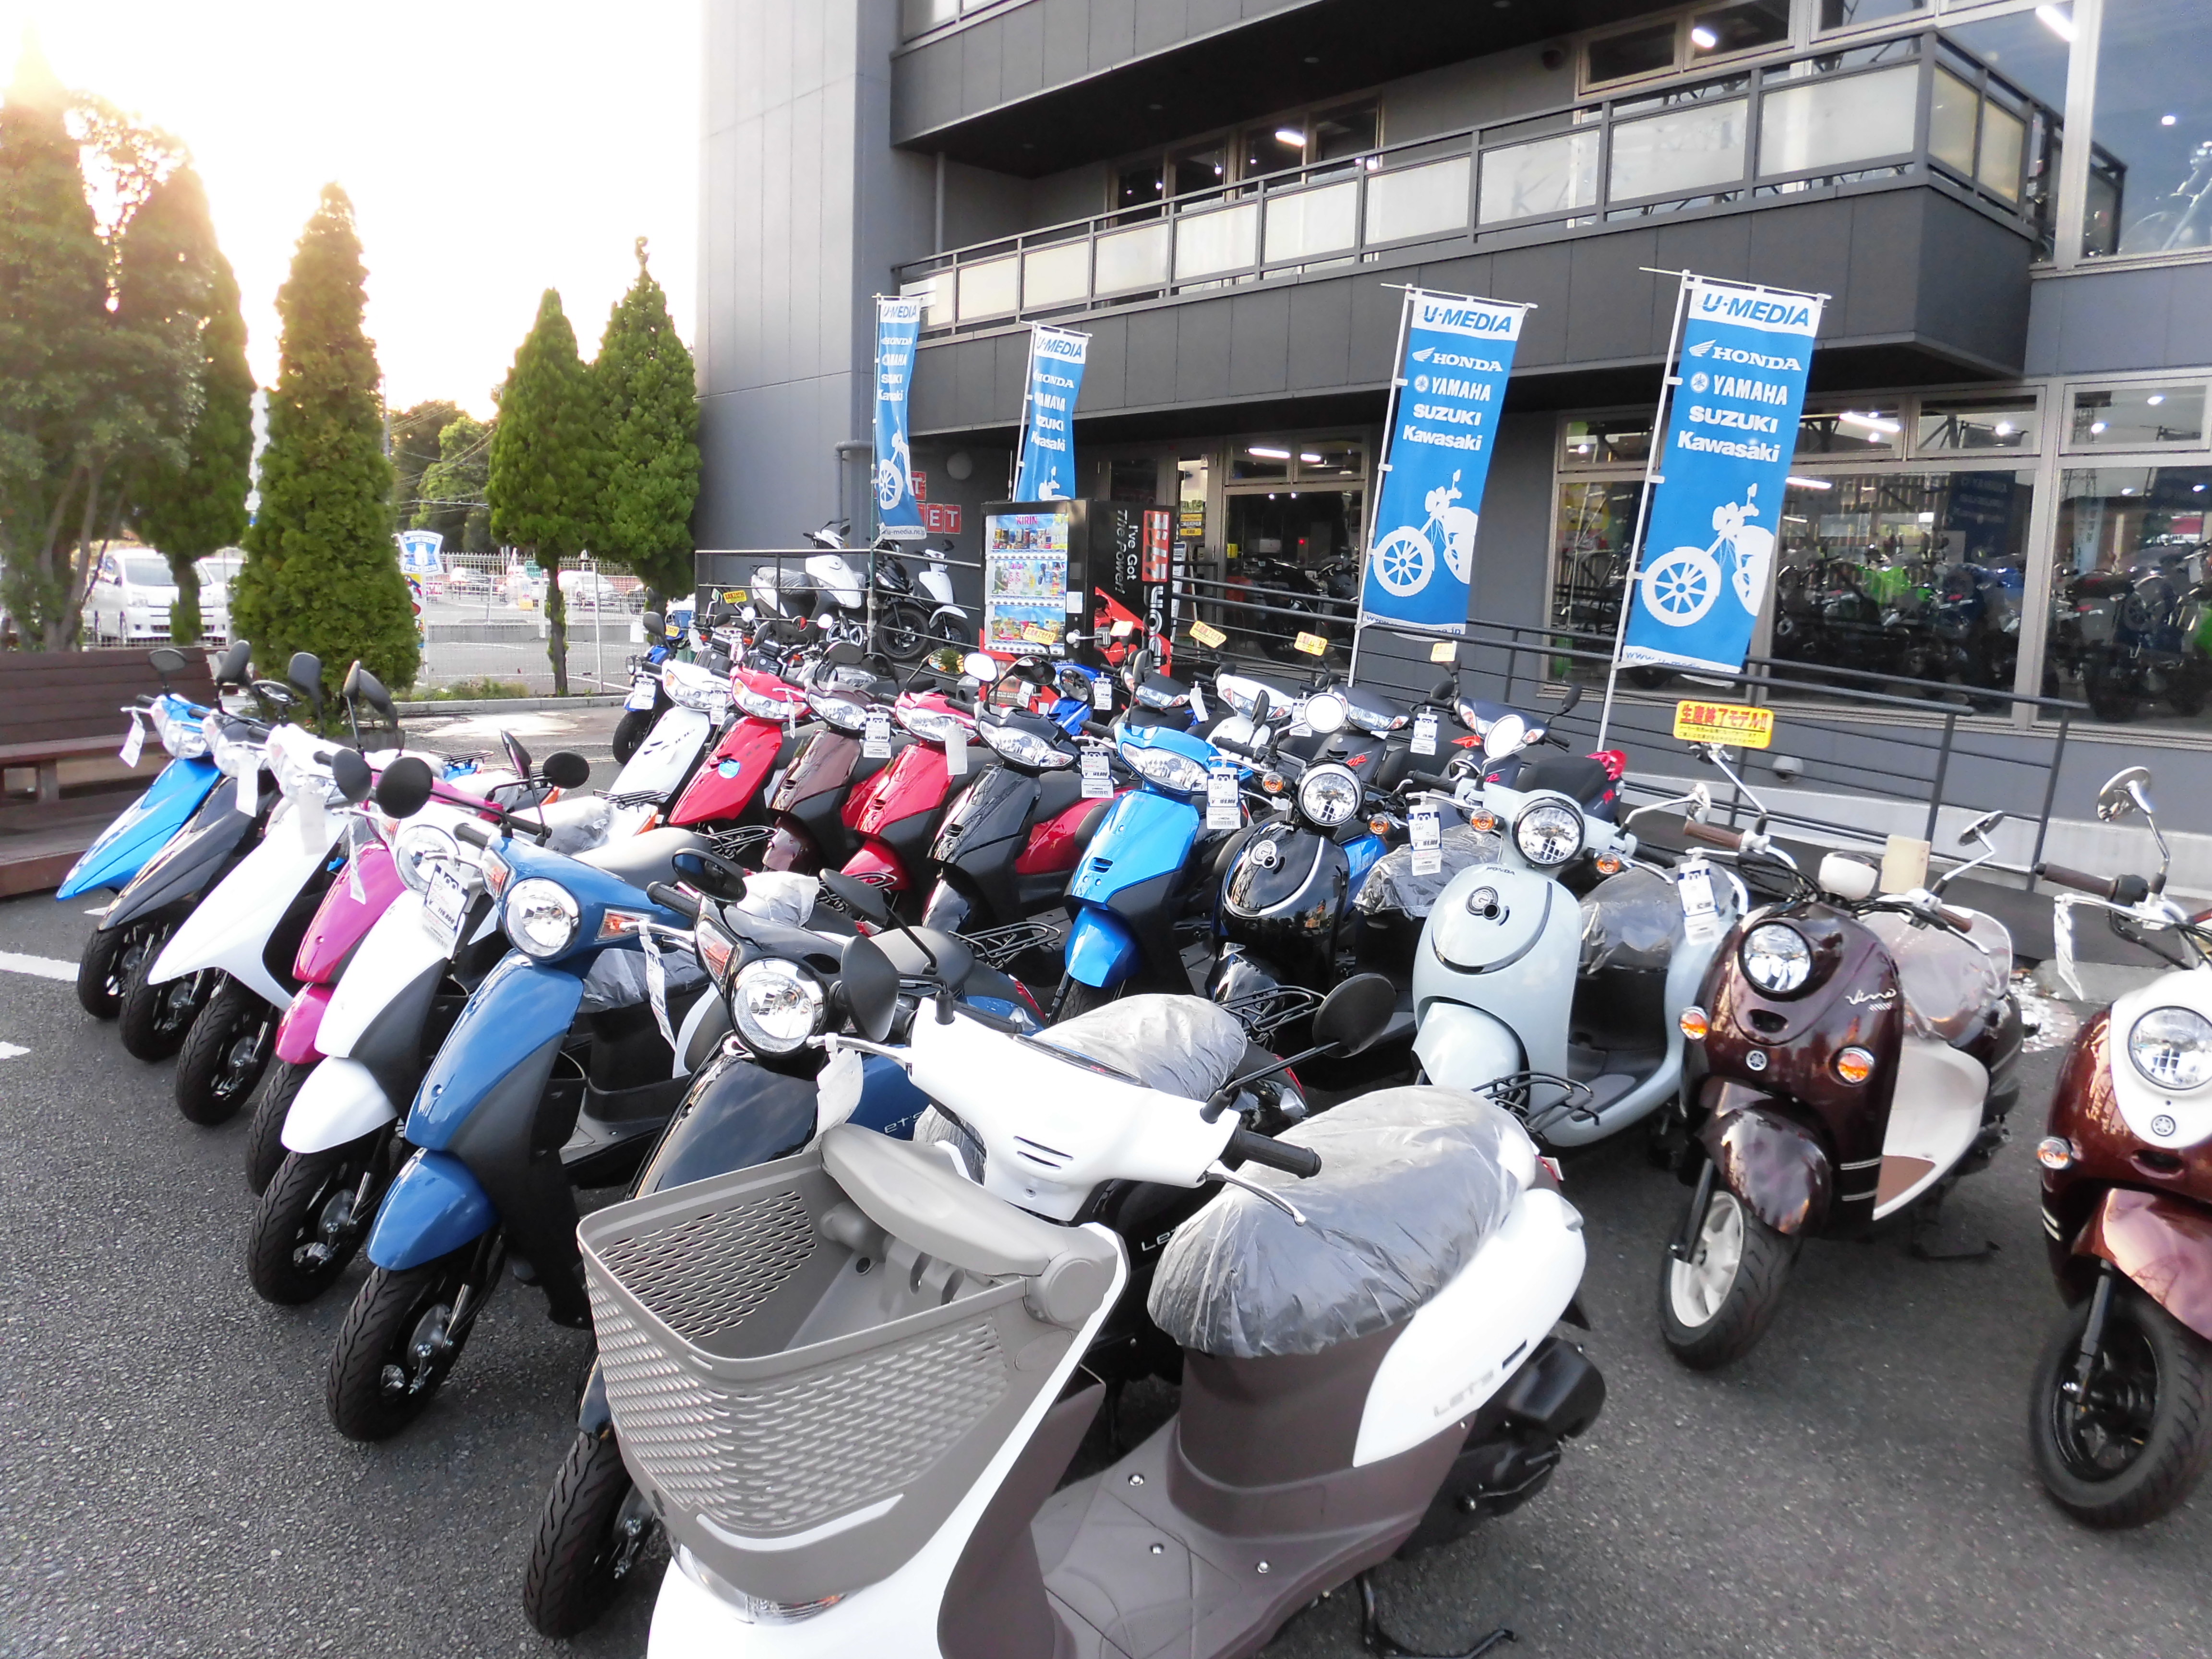 原付バイクもあります 最新情報 U Media ユーメディア 中古バイク 新車バイク探しの決定版 神奈川 東京でバイク探すならユーメディア